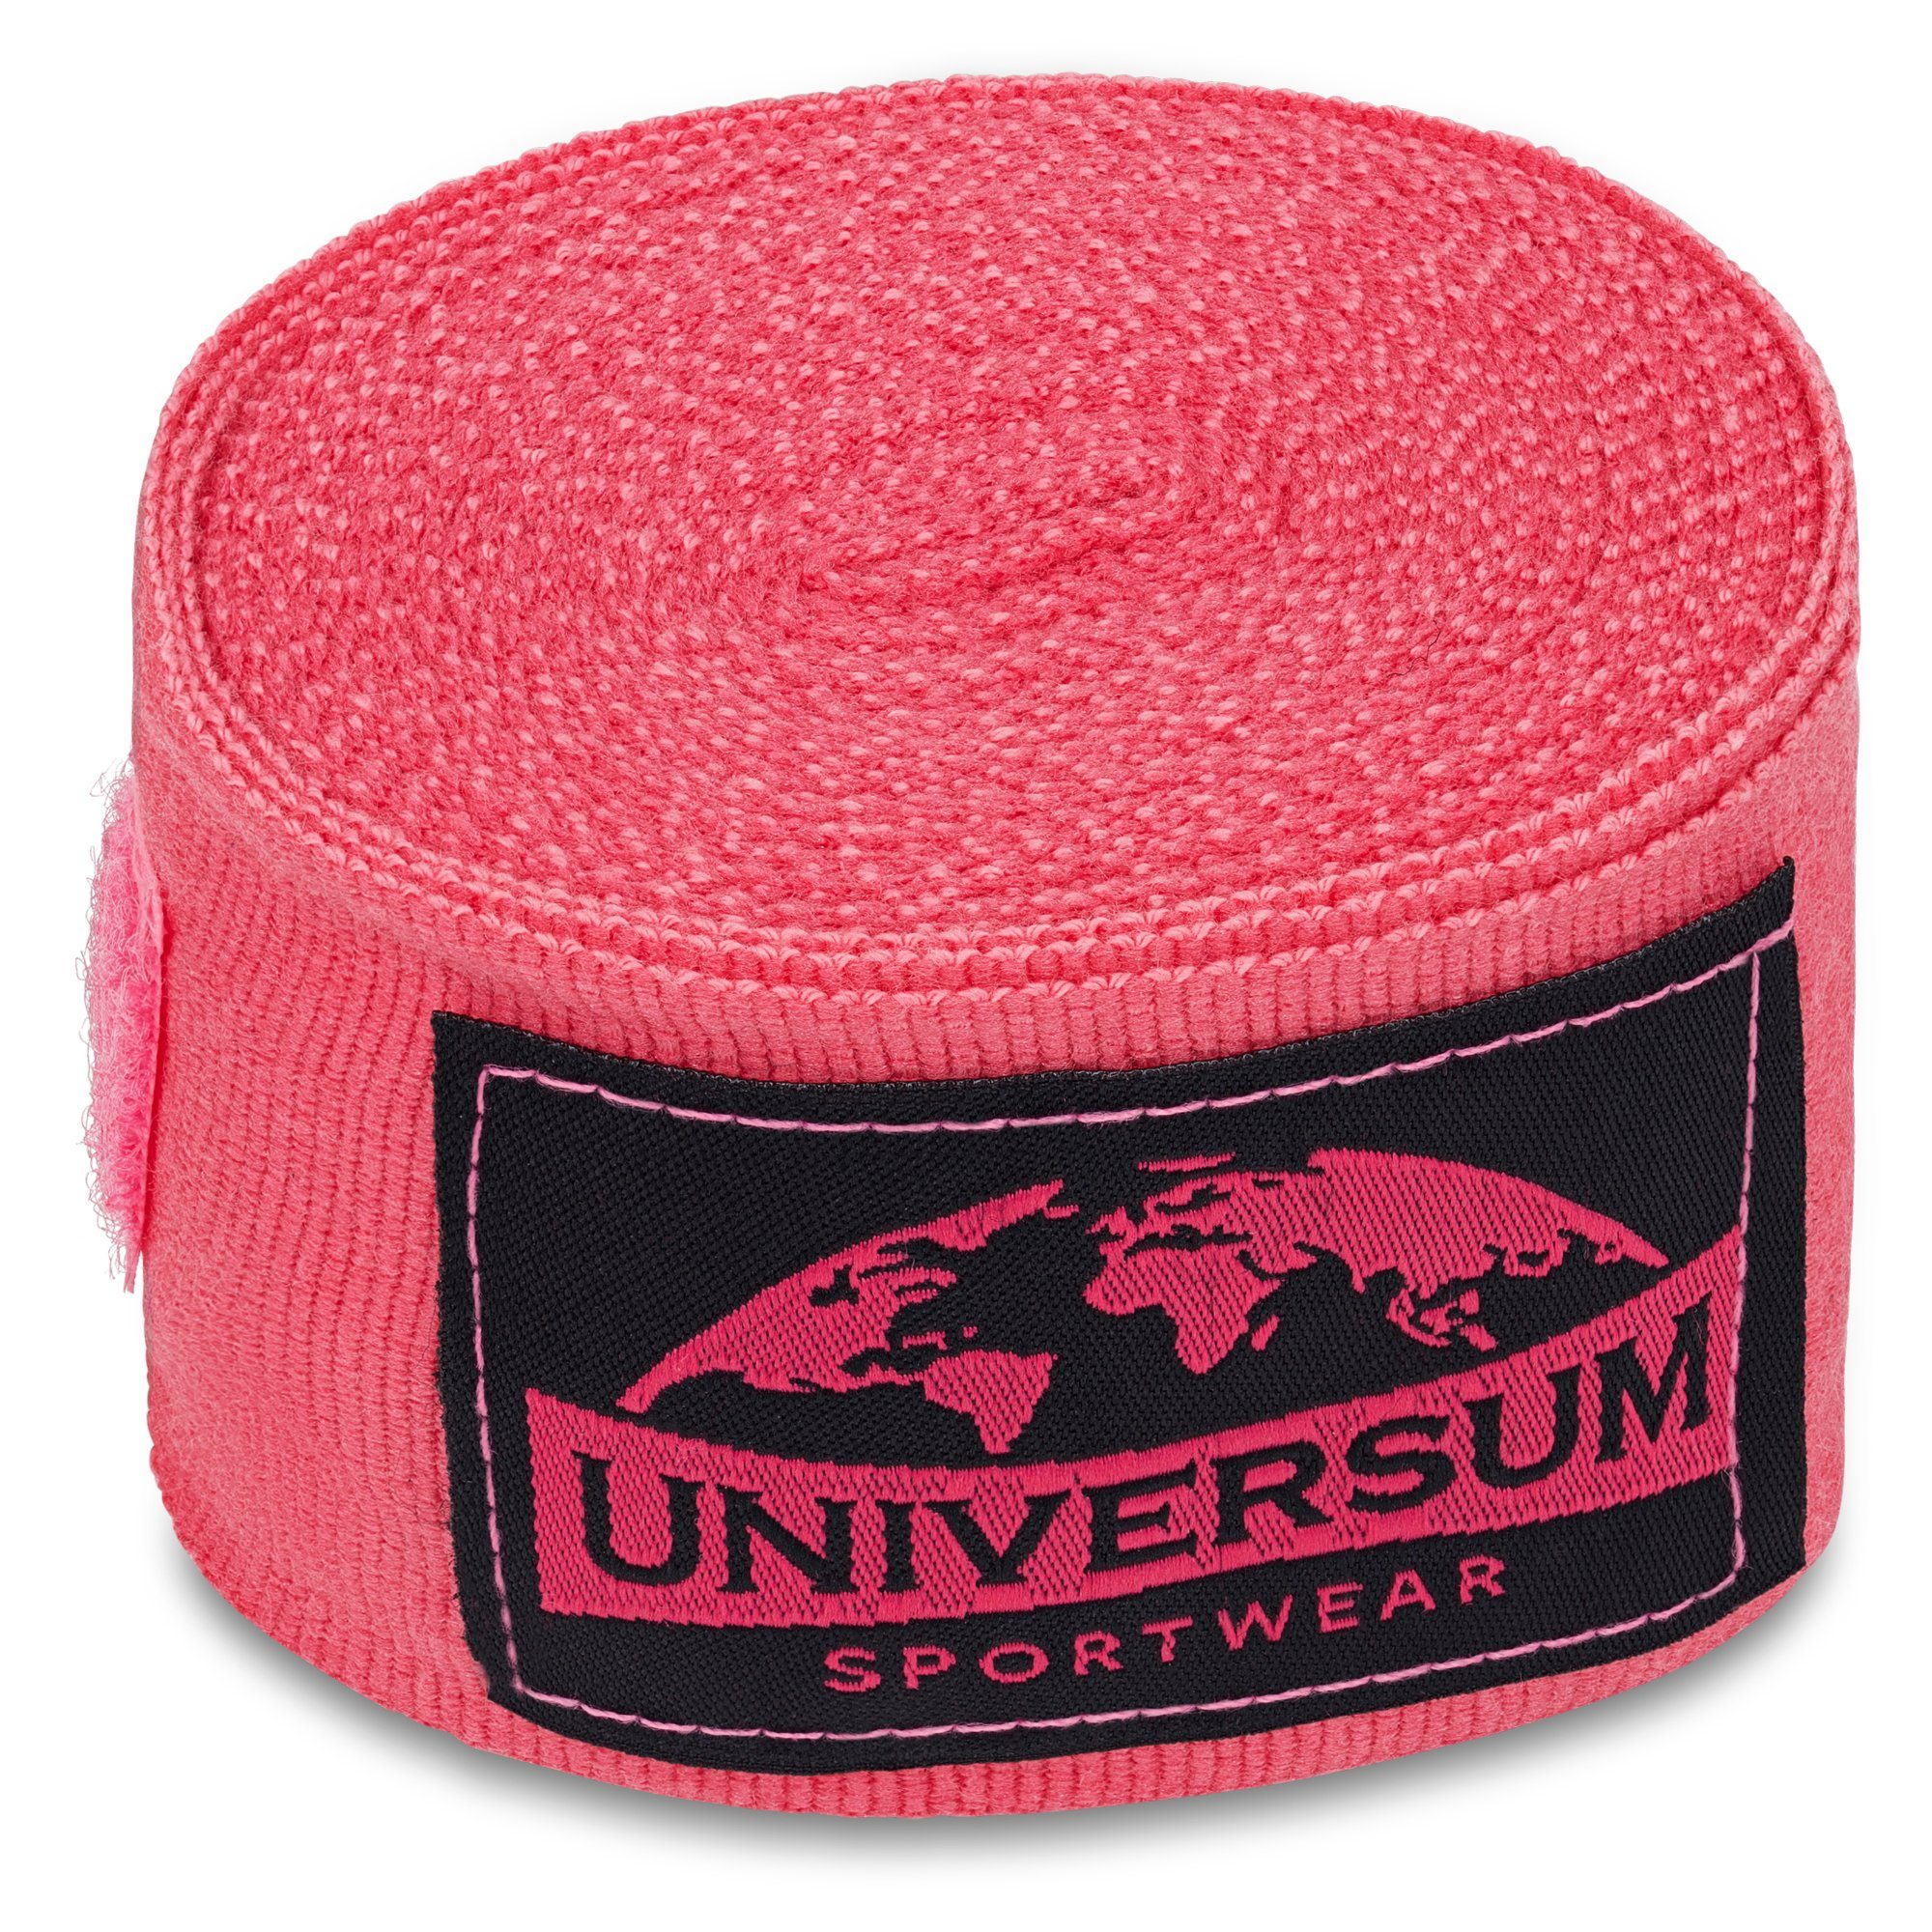 Universum Sportwear Boxbandagen Handgelenk mit langen Rosa-Schwarz Bandage, Klettverschluss